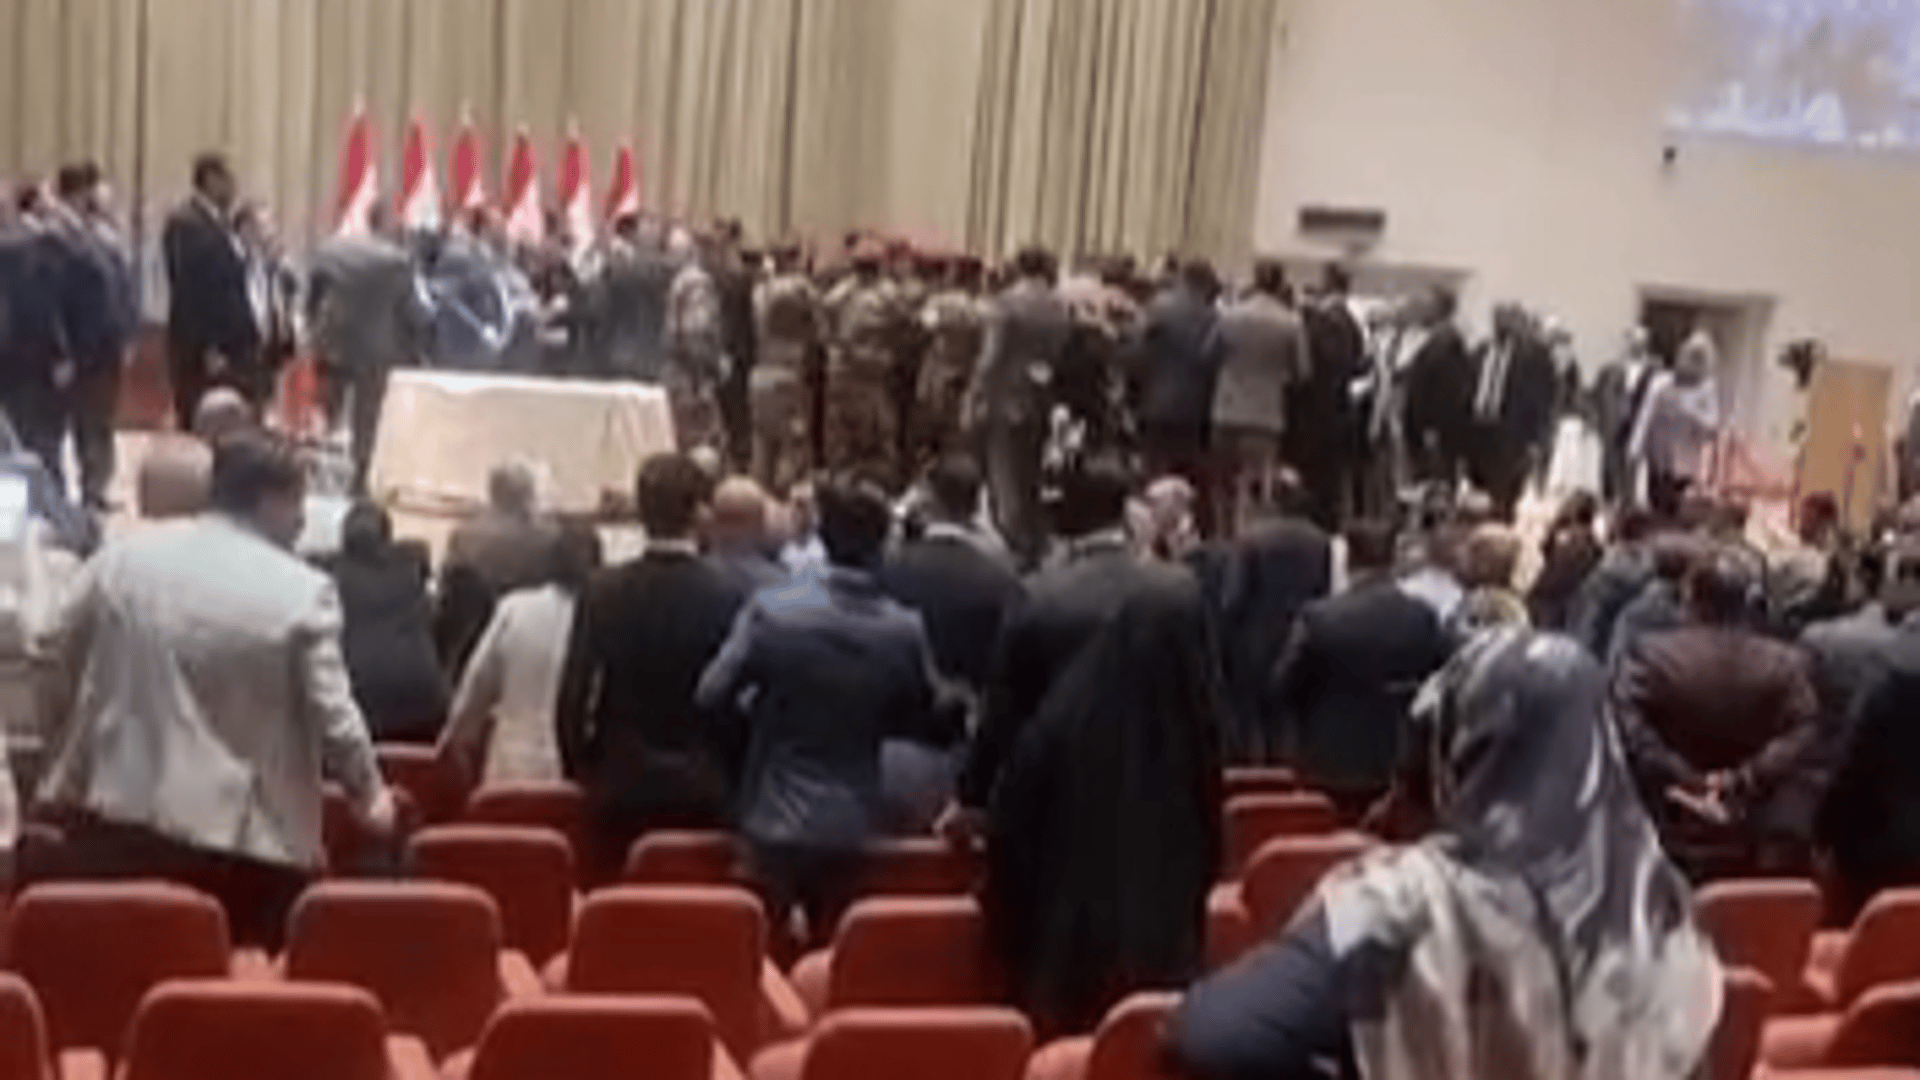 فيديو يظهر المعركة داخل قاعة البرلمان وقوات الأمن تتدخل - عاجل